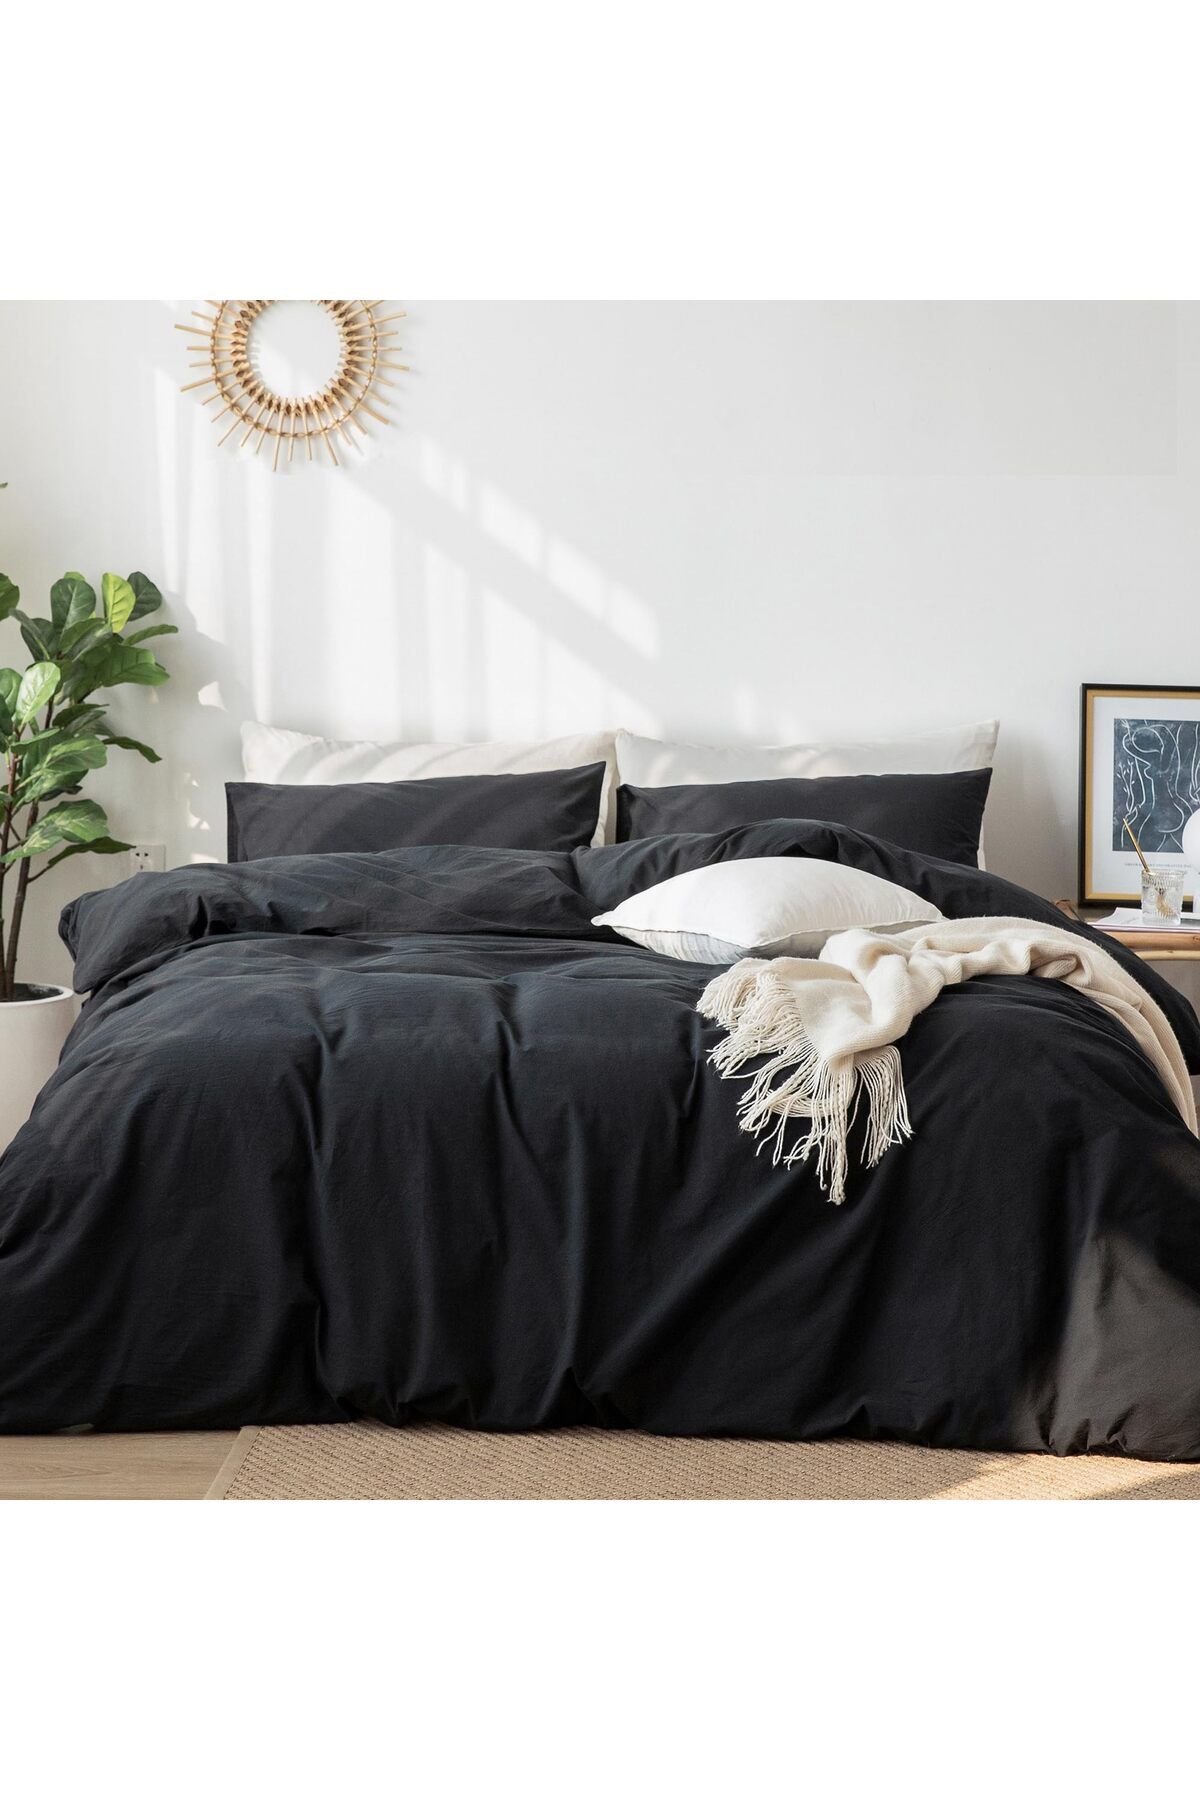 İzgi Concept Premium Siyah Çift Kişilik Nevresim Takımı Pamuklu Ranforce Kumaş Nevresim + Çarşaf + Yastık Kılıfı